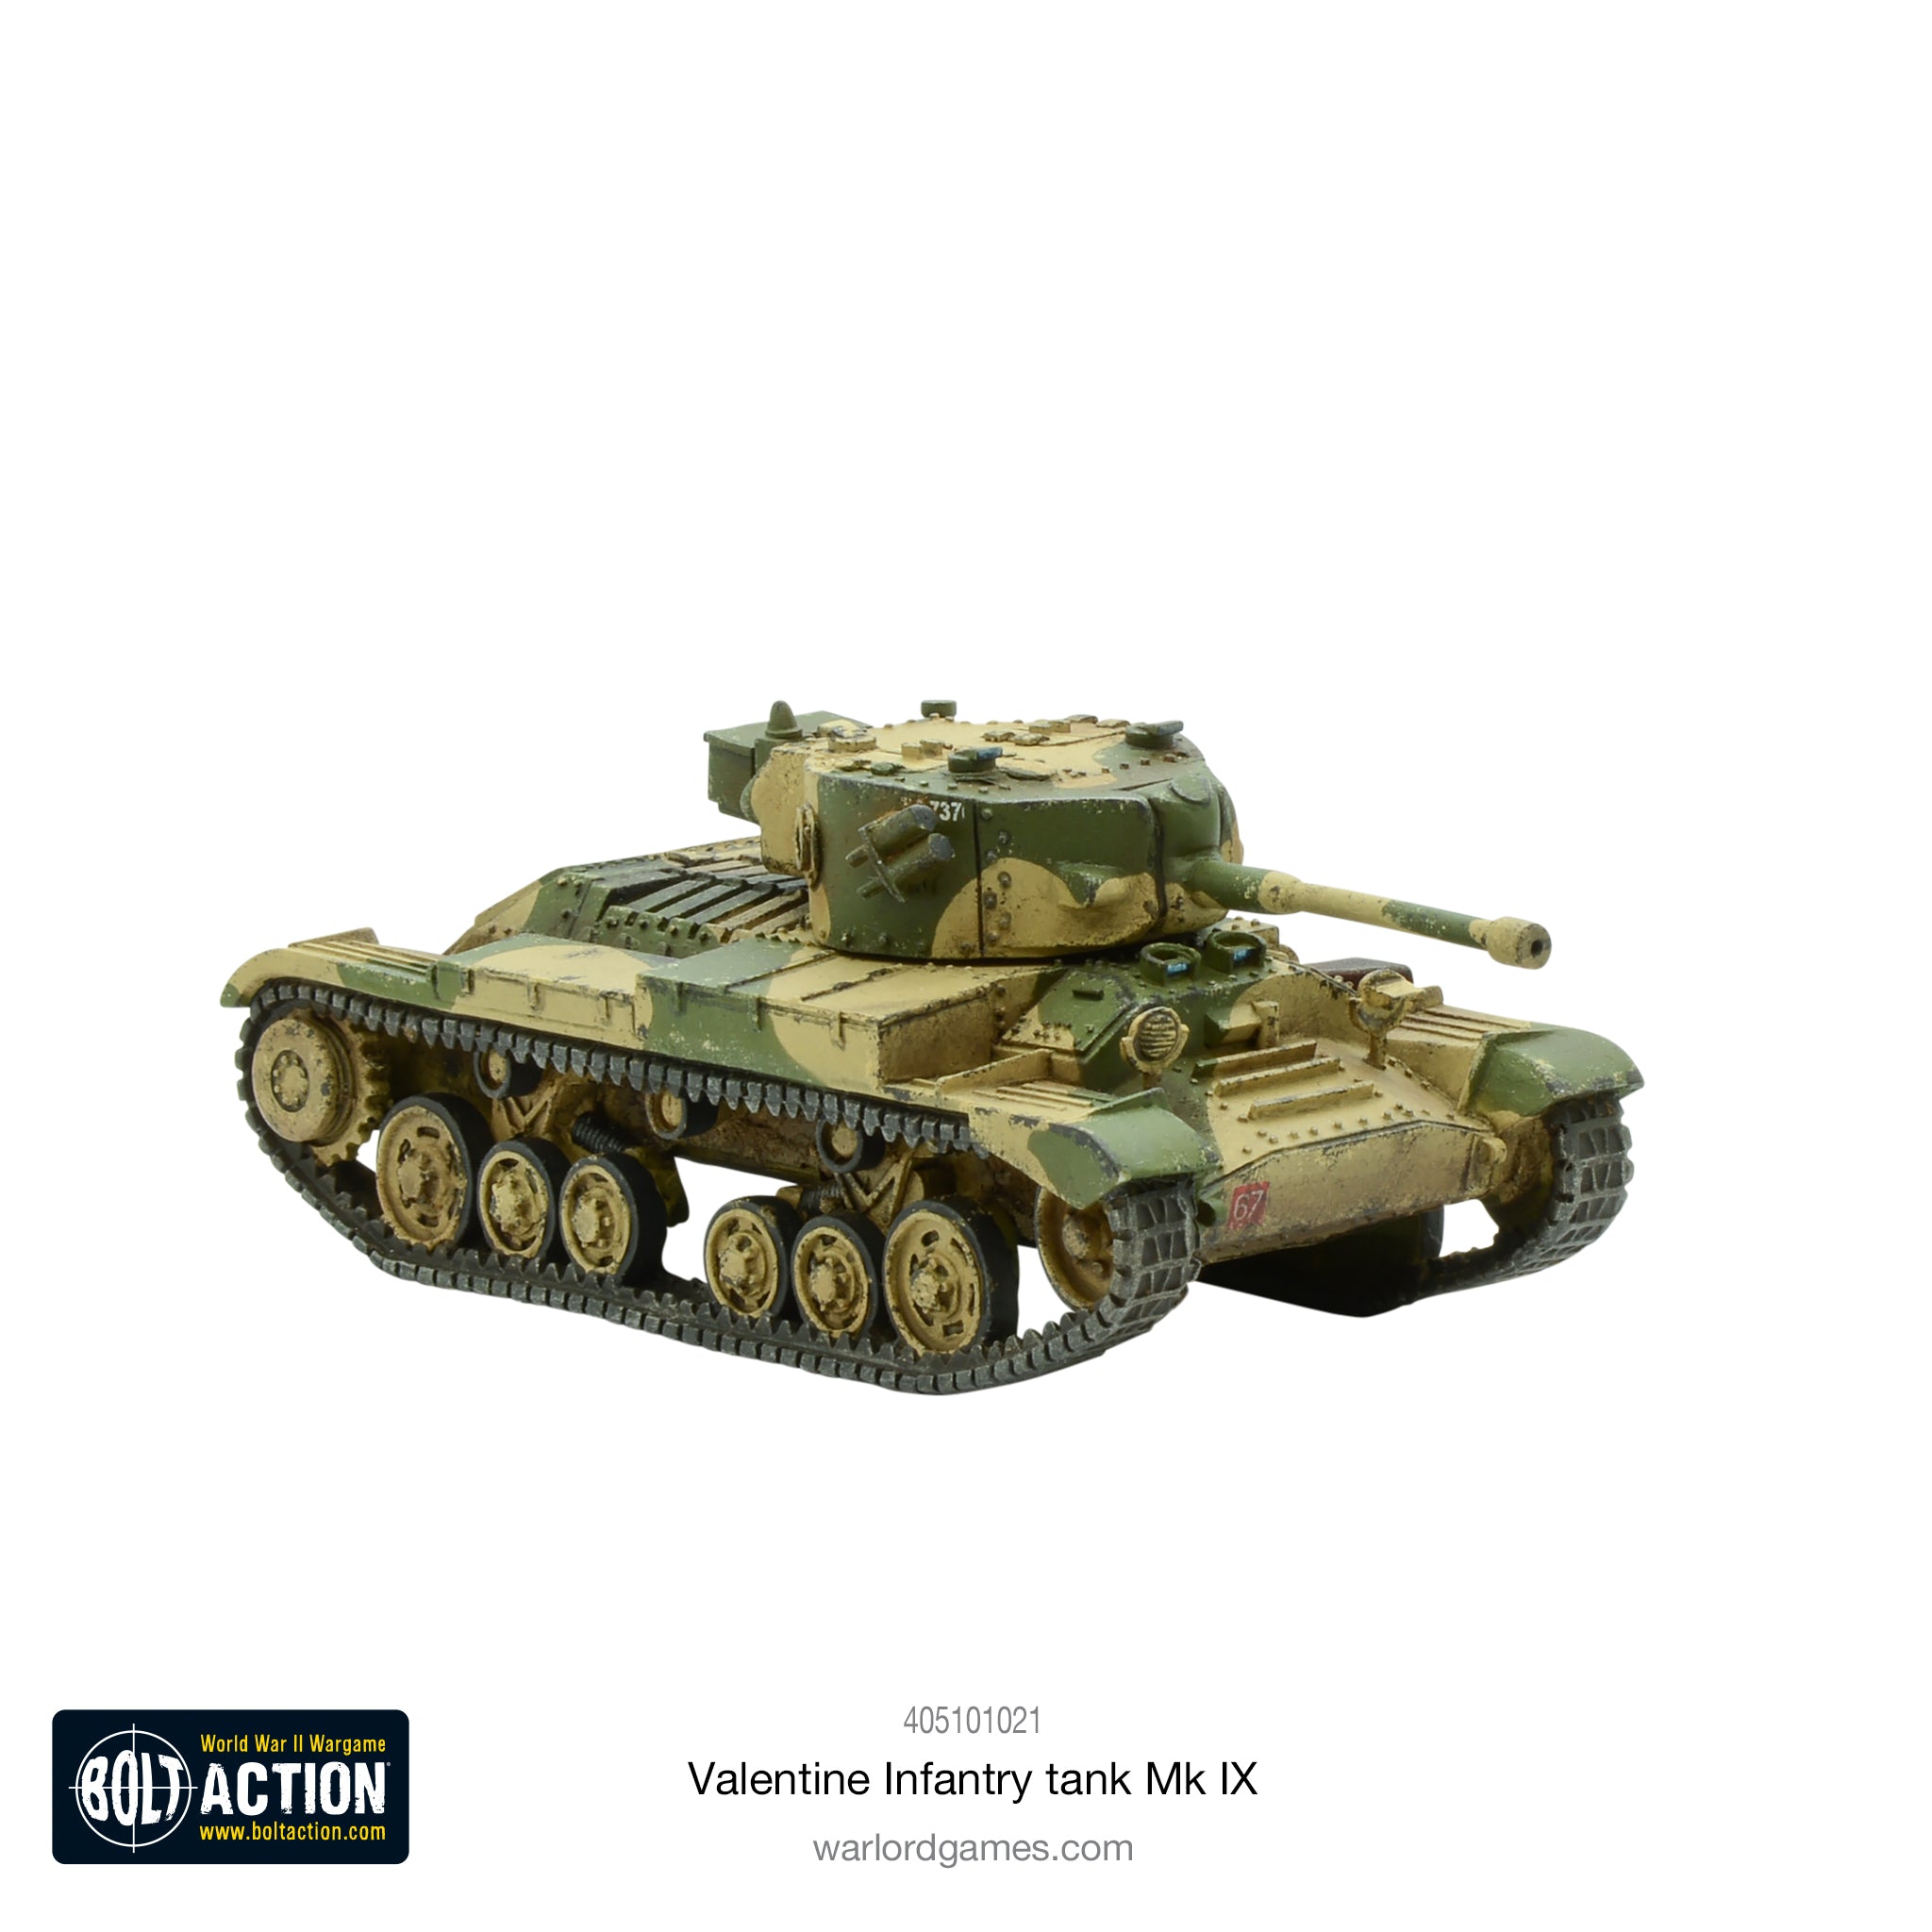 Valentine Infantry tank Mk IX